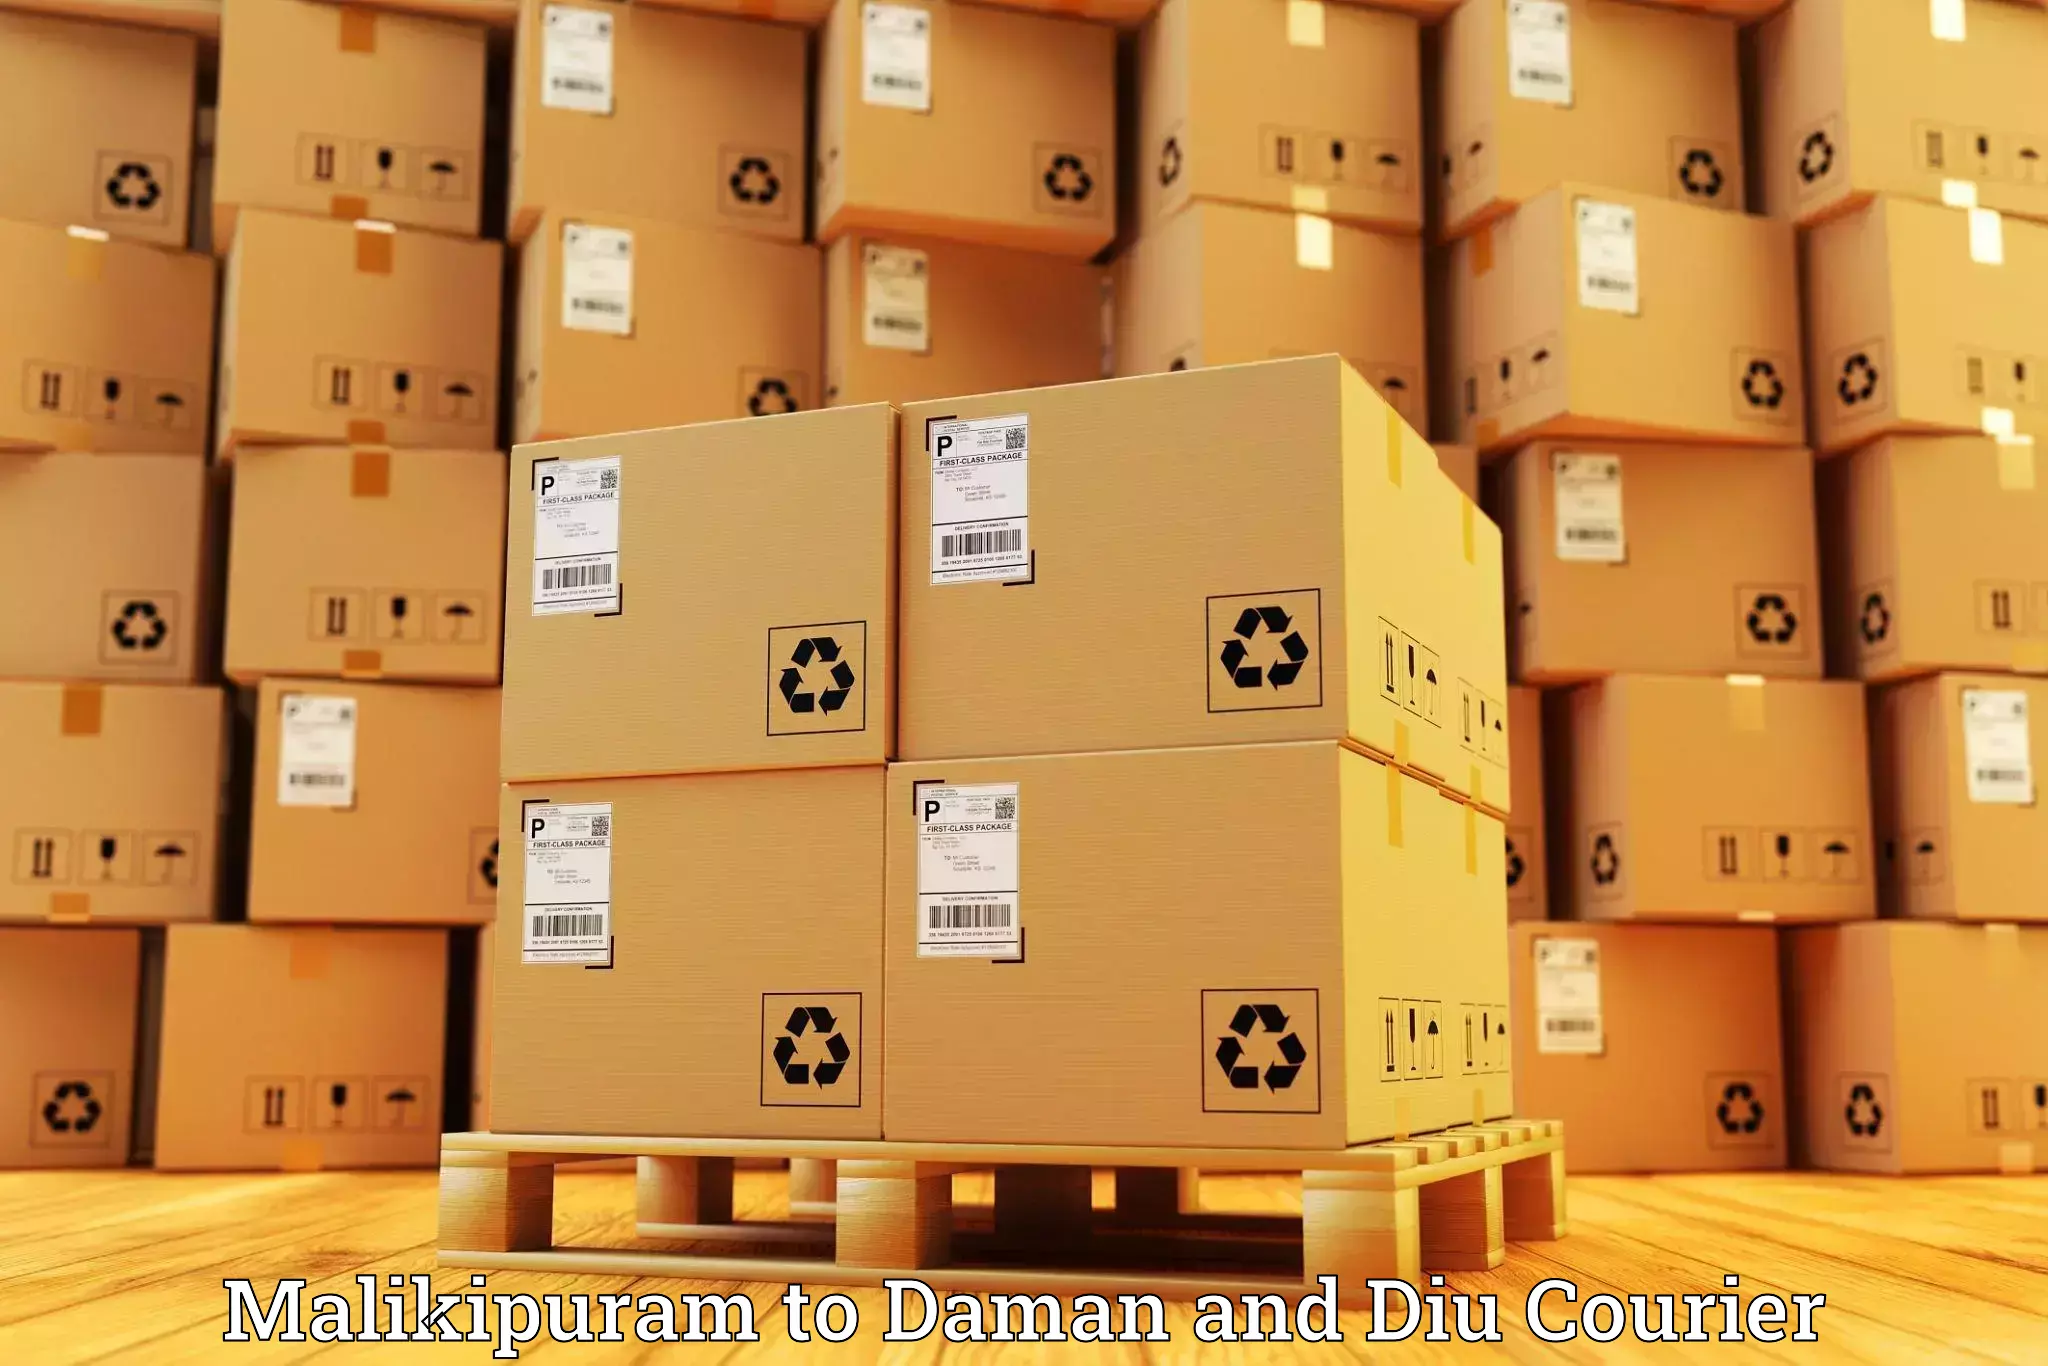 Global shipping networks Malikipuram to Daman